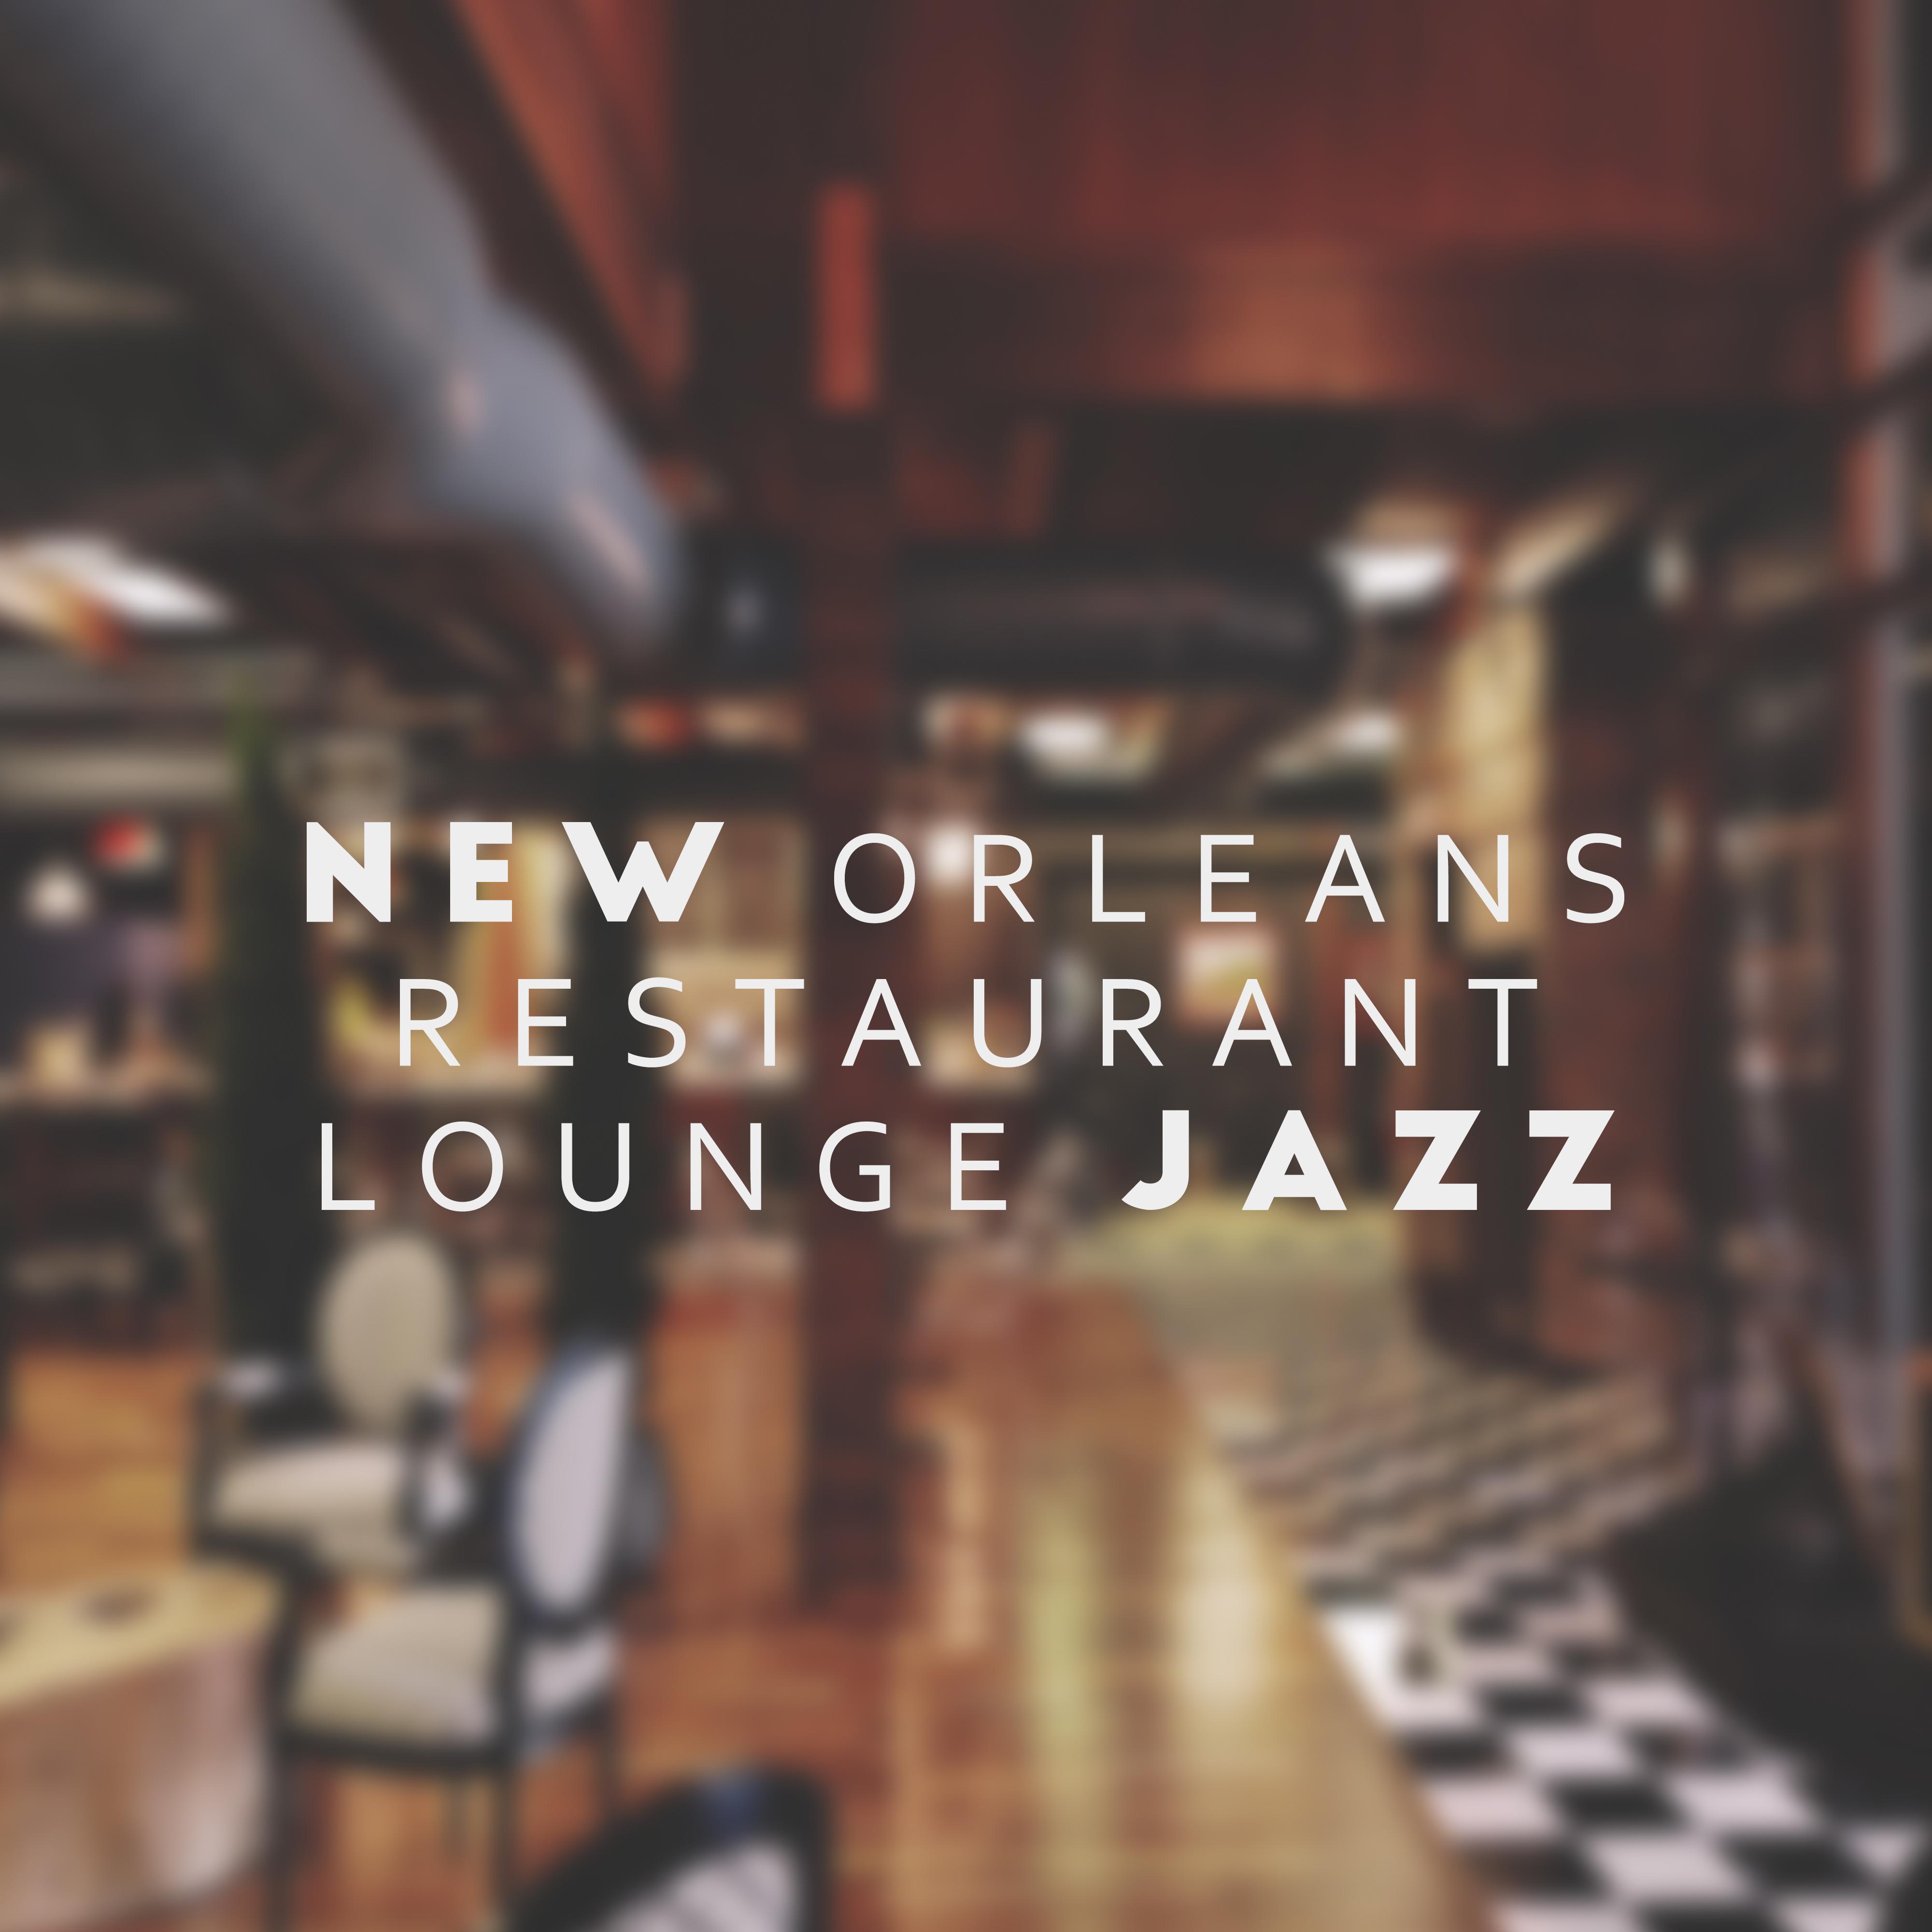 New Orleans Restaurant Lounge Jazz